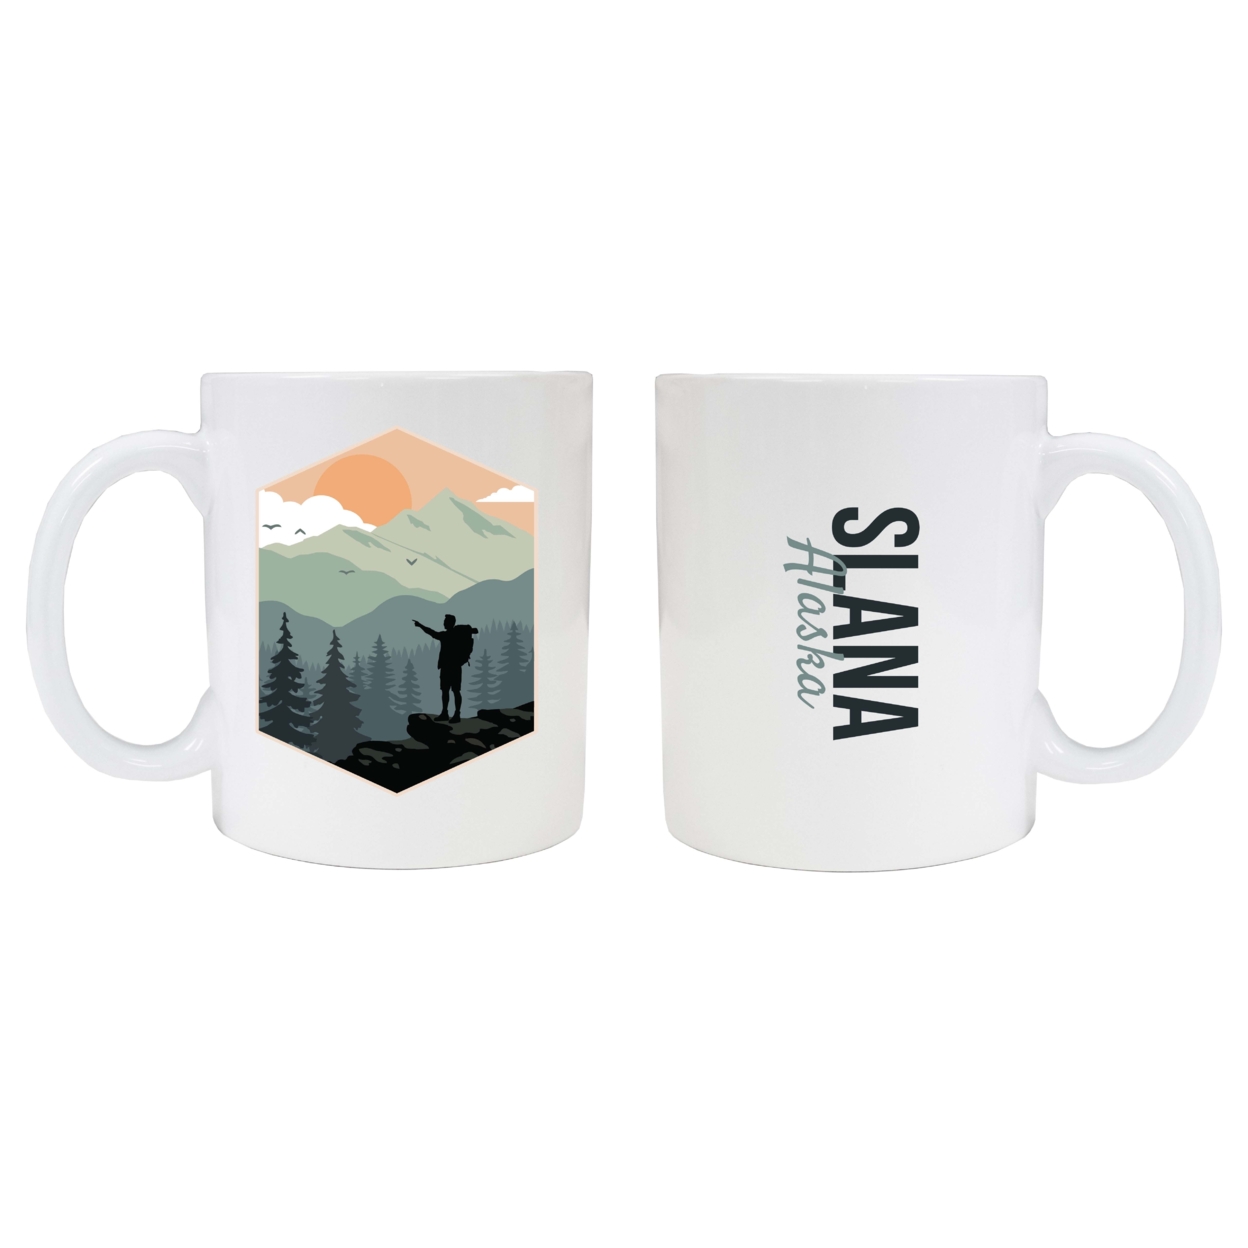 Slana Alaska Souvenir Hike Outdoors Design 8oz Coffee Mug 2-Pack